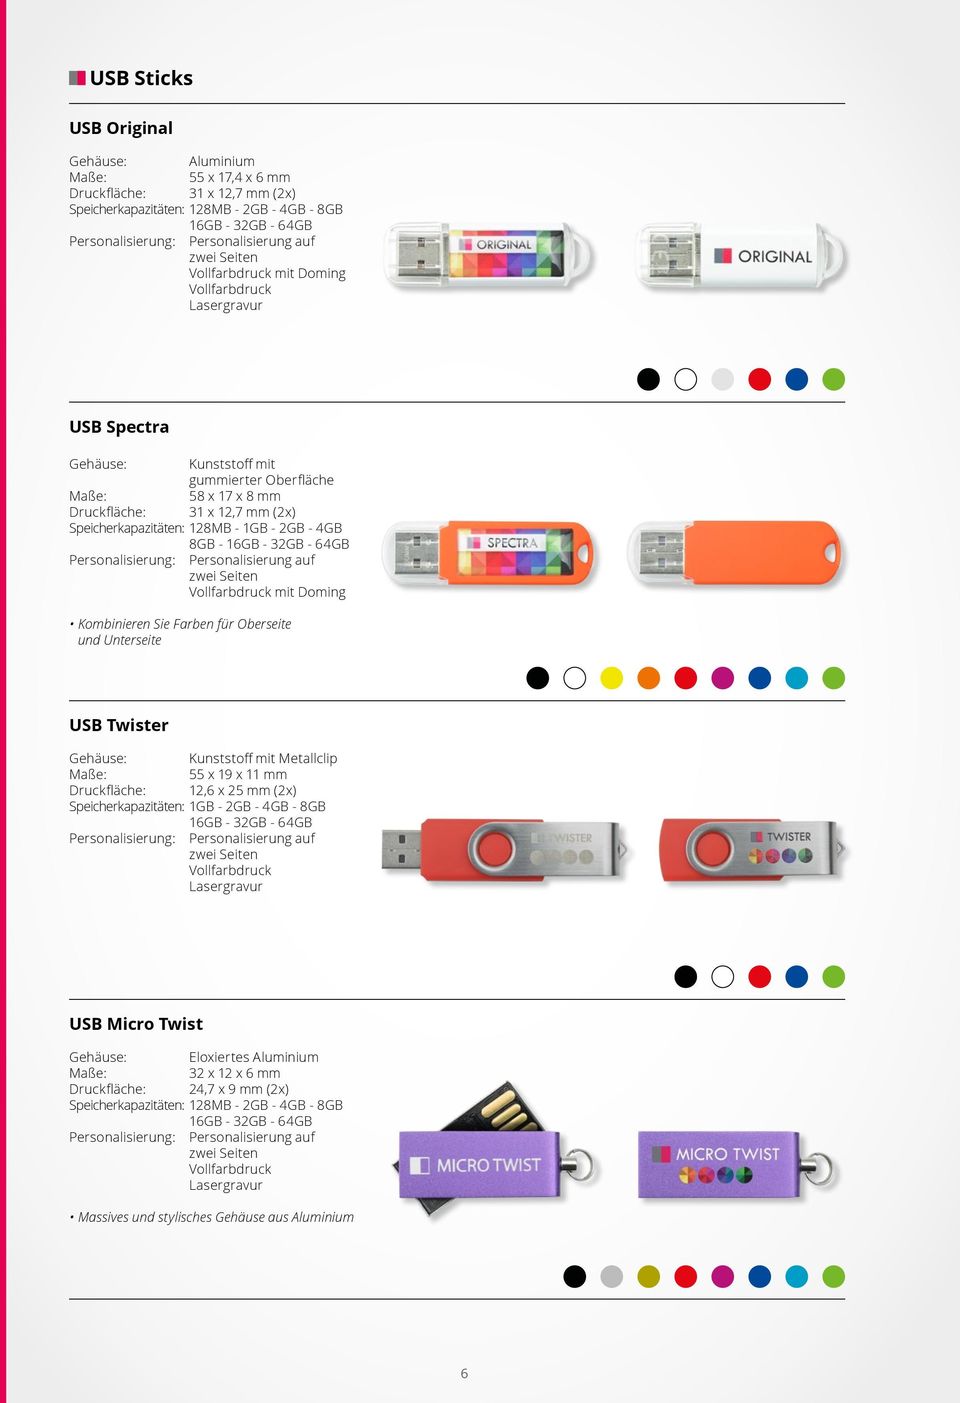 Oberseite und Unterseite USB Twister Gehäuse: Kunststoff mit Metallclip 55 x 19 x 11 mm 12,6 x 25 mm (2x) Speicherkapazitäten: 1GB - 2GB - 4GB - 8GB Lasergravur USB